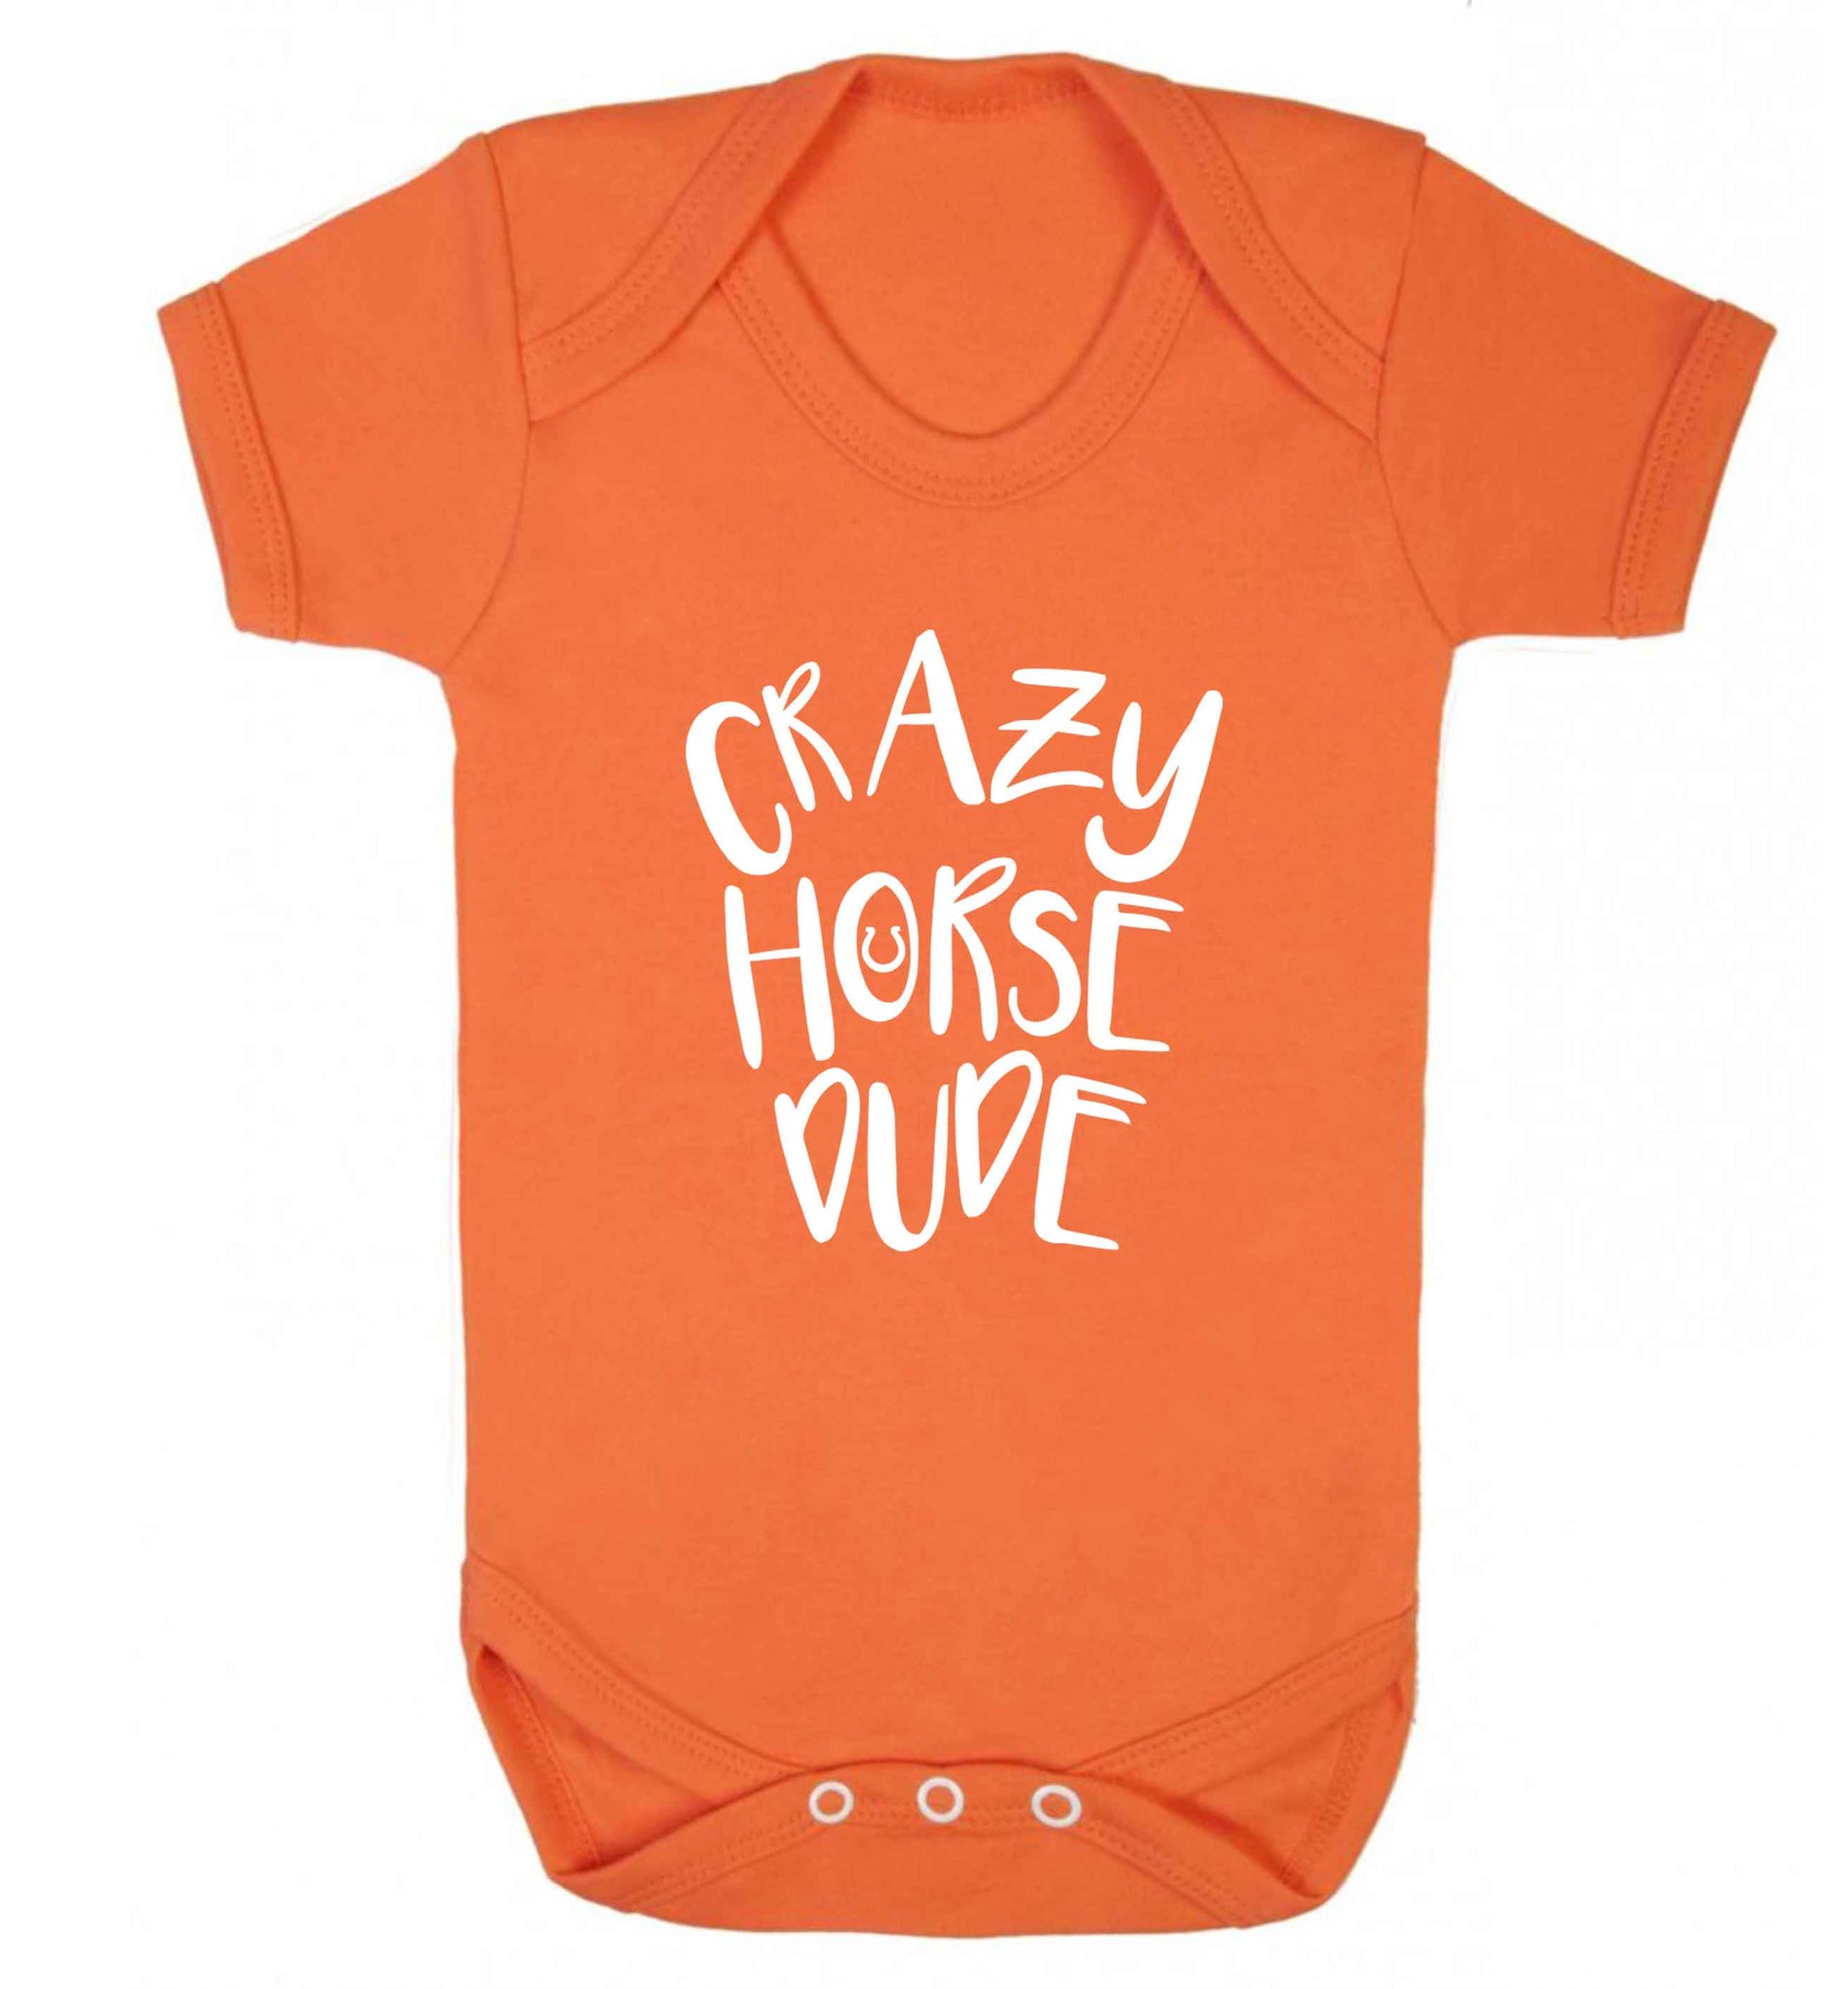 Crazy horse dude baby vest orange 18-24 months